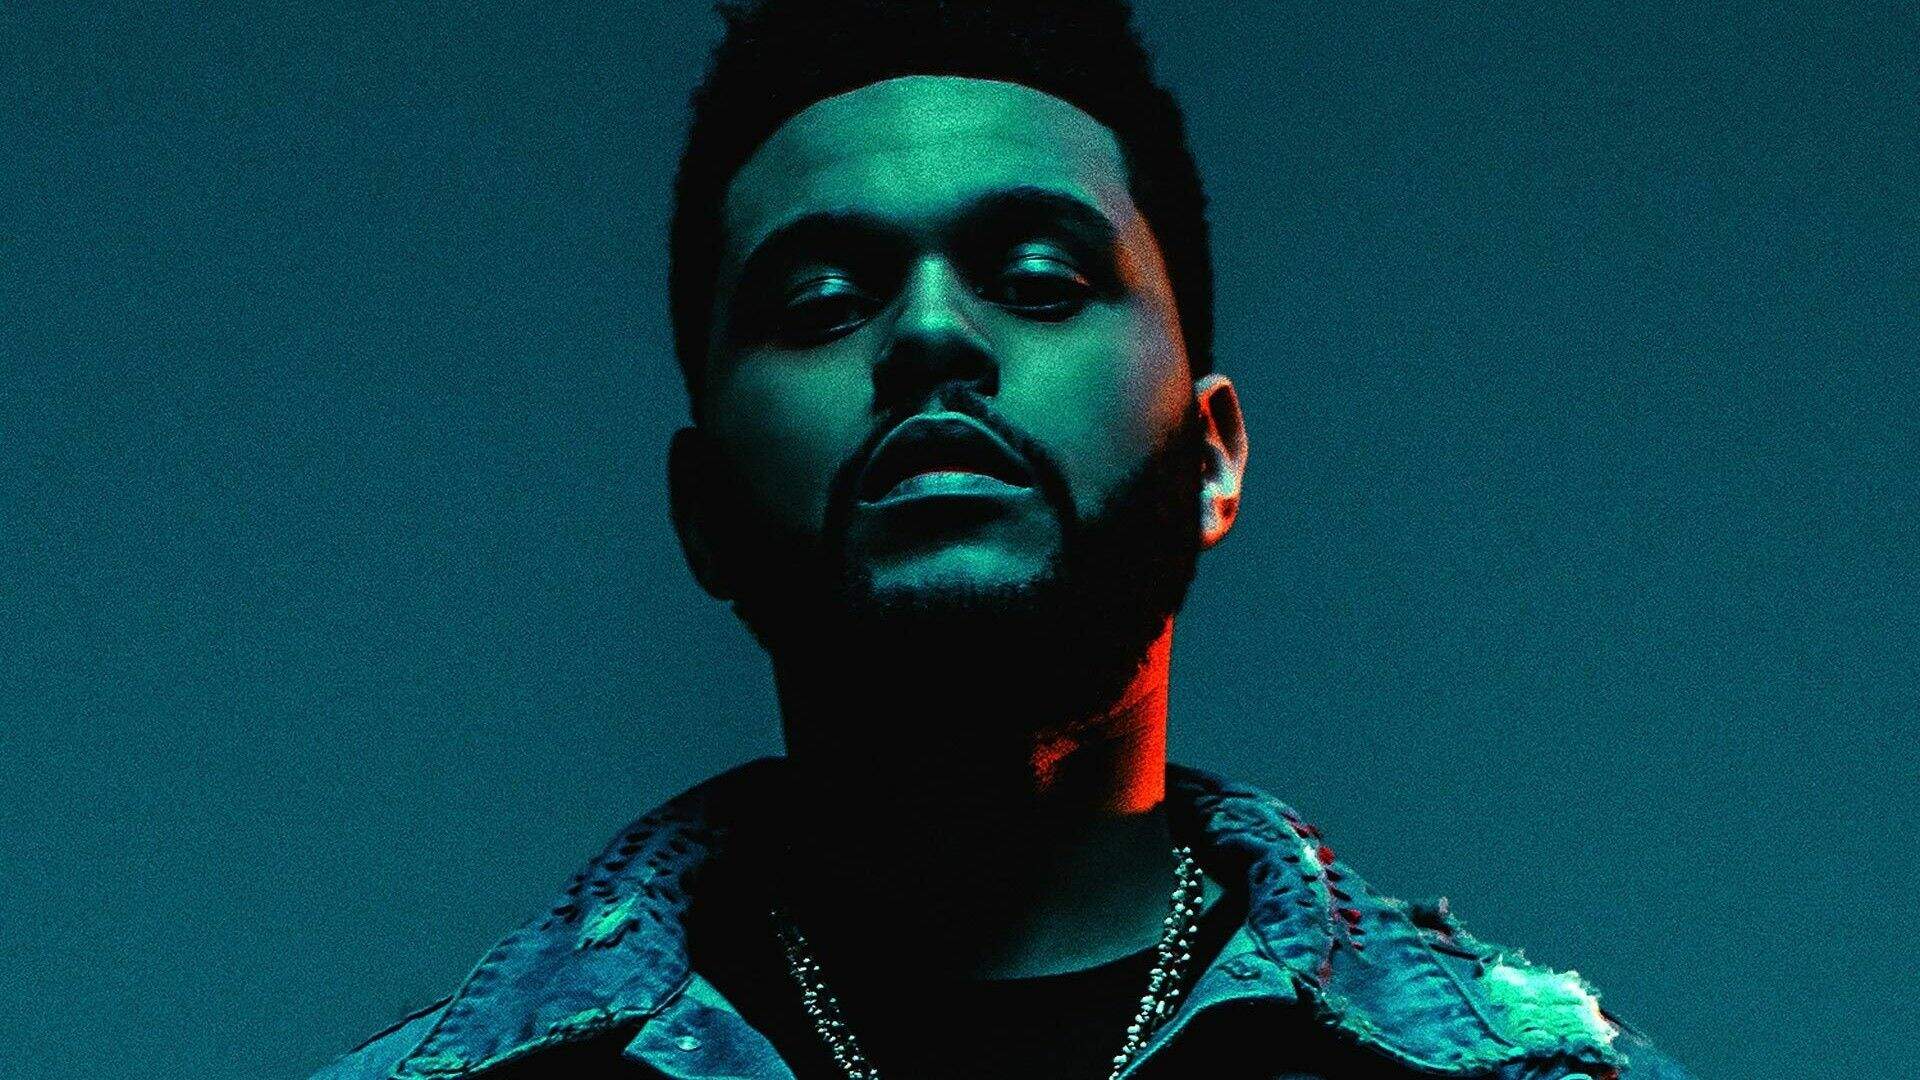 The Weeknd abandonou a música? Artista surpreende fãs ao apostar em nova carreira artística - Metropolitana FM